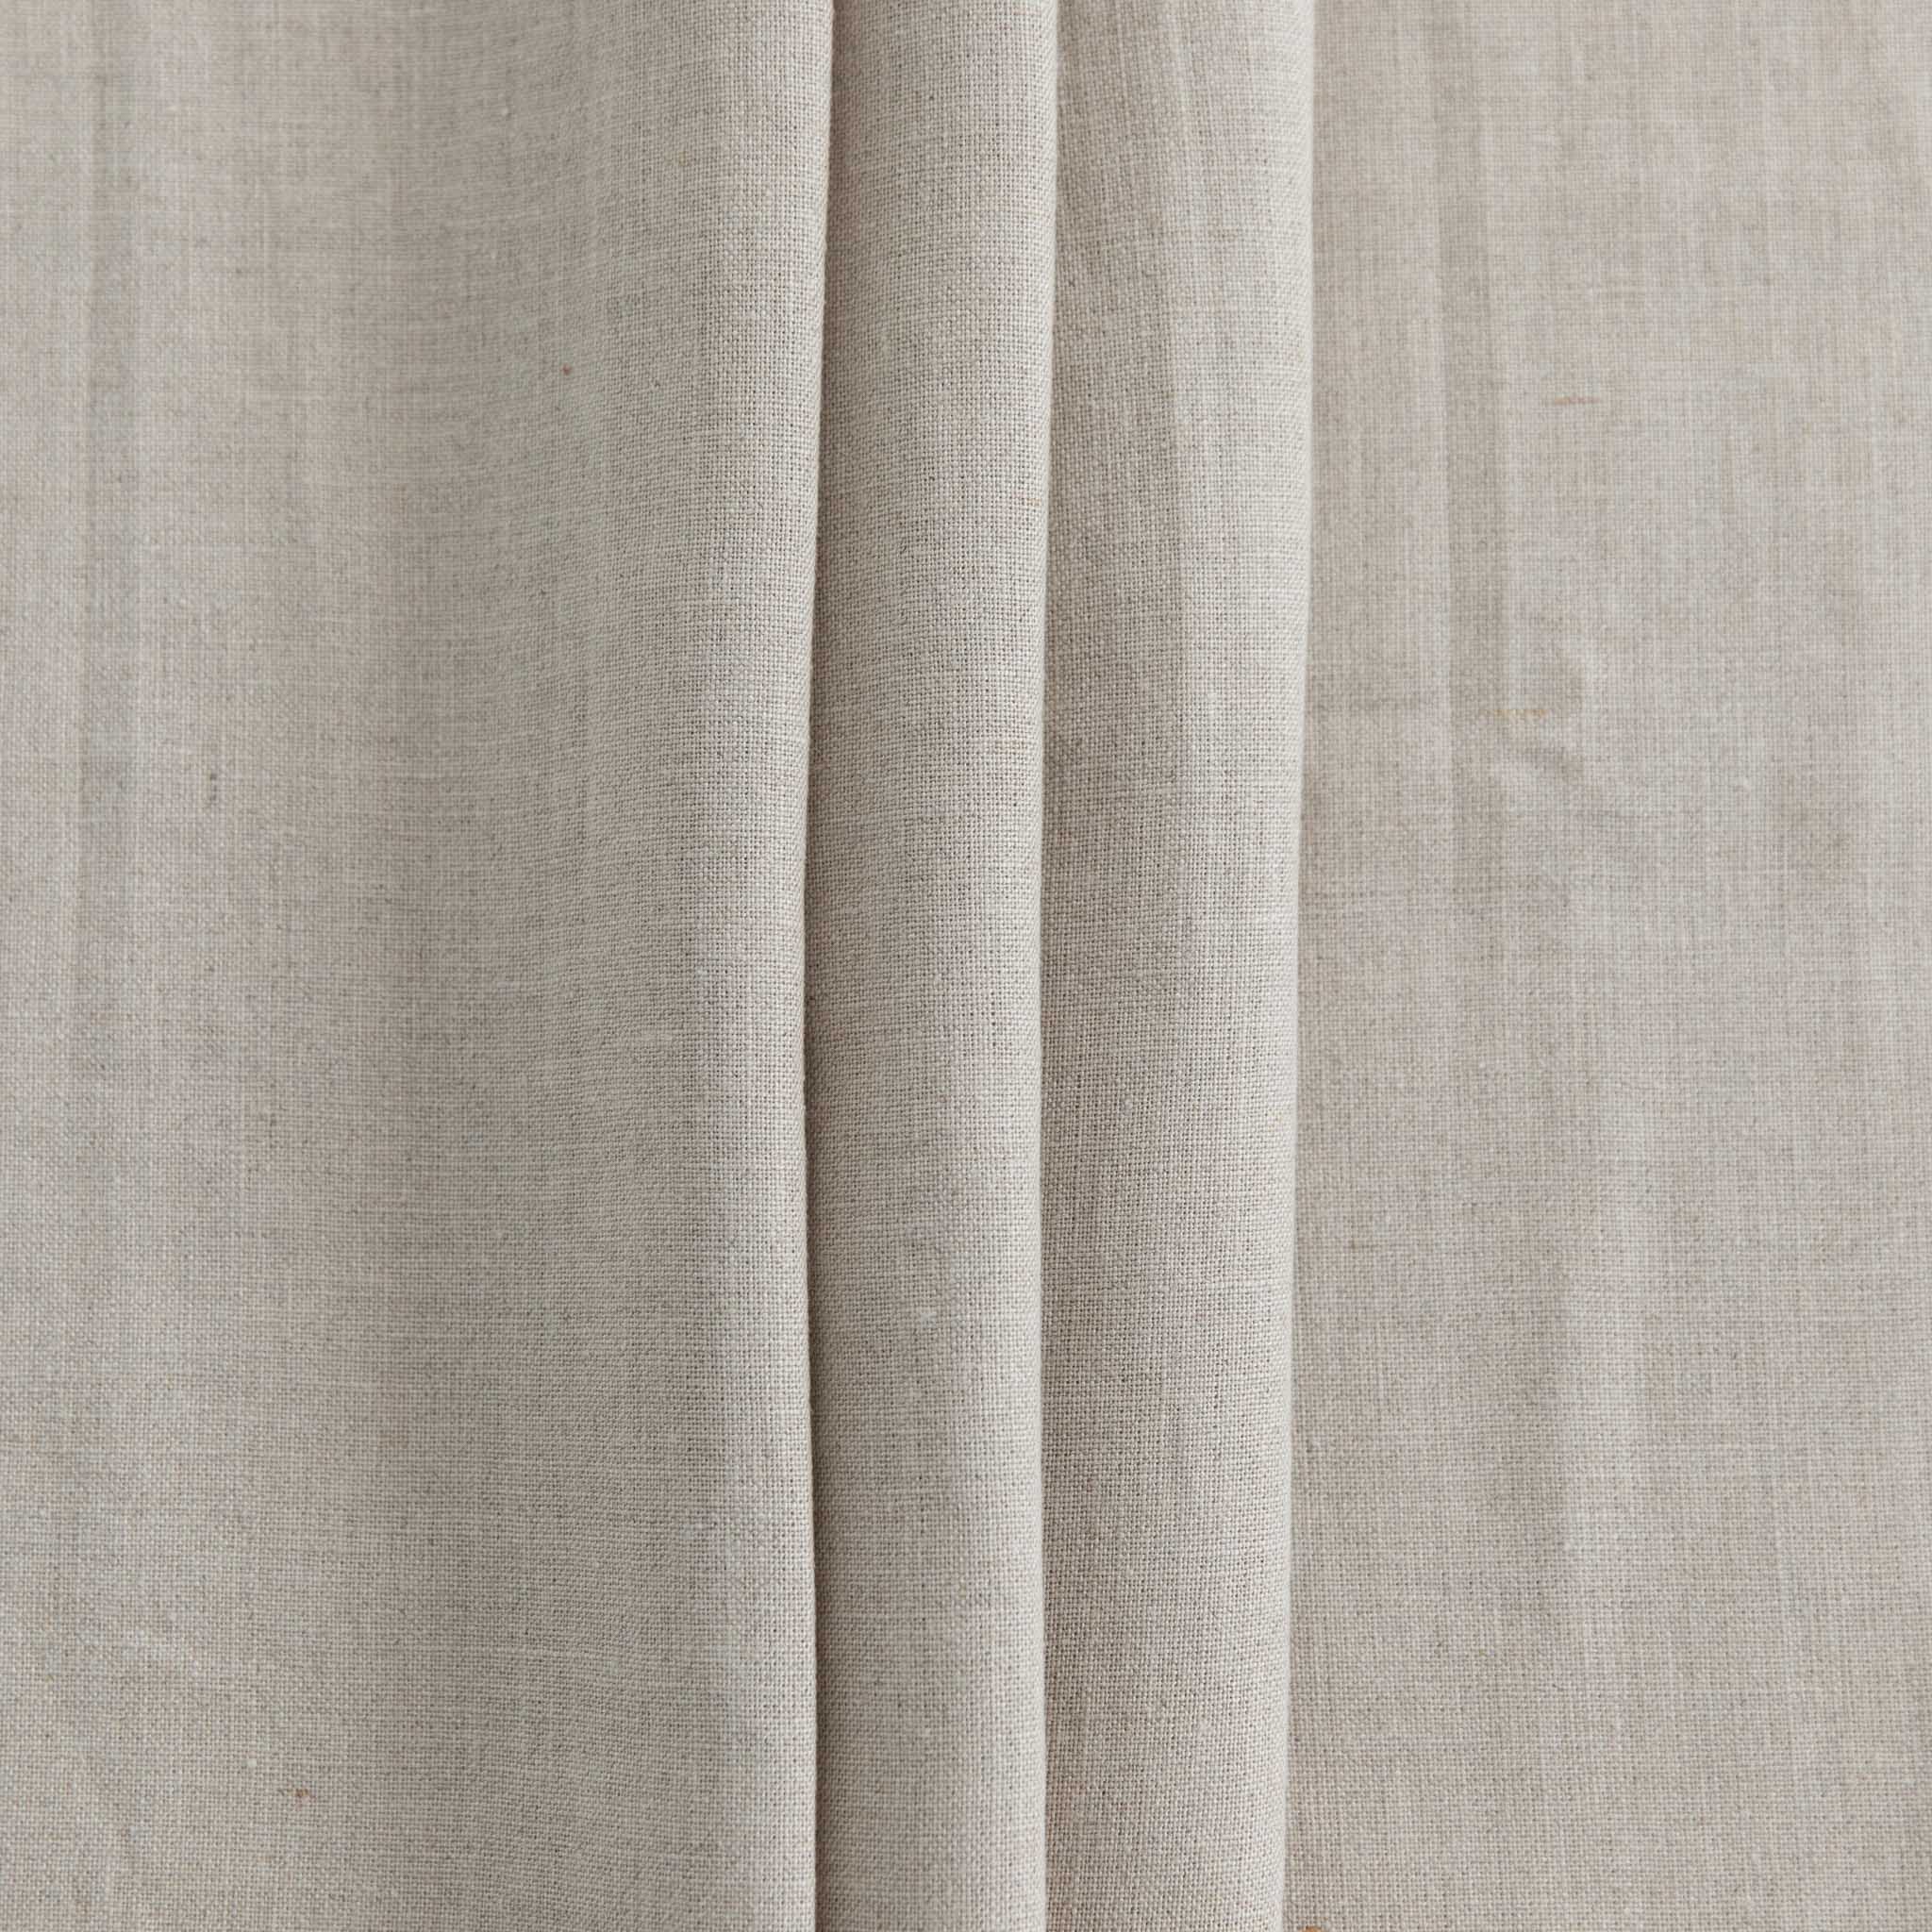 Heavyweight Linen - Natural - 1/4m